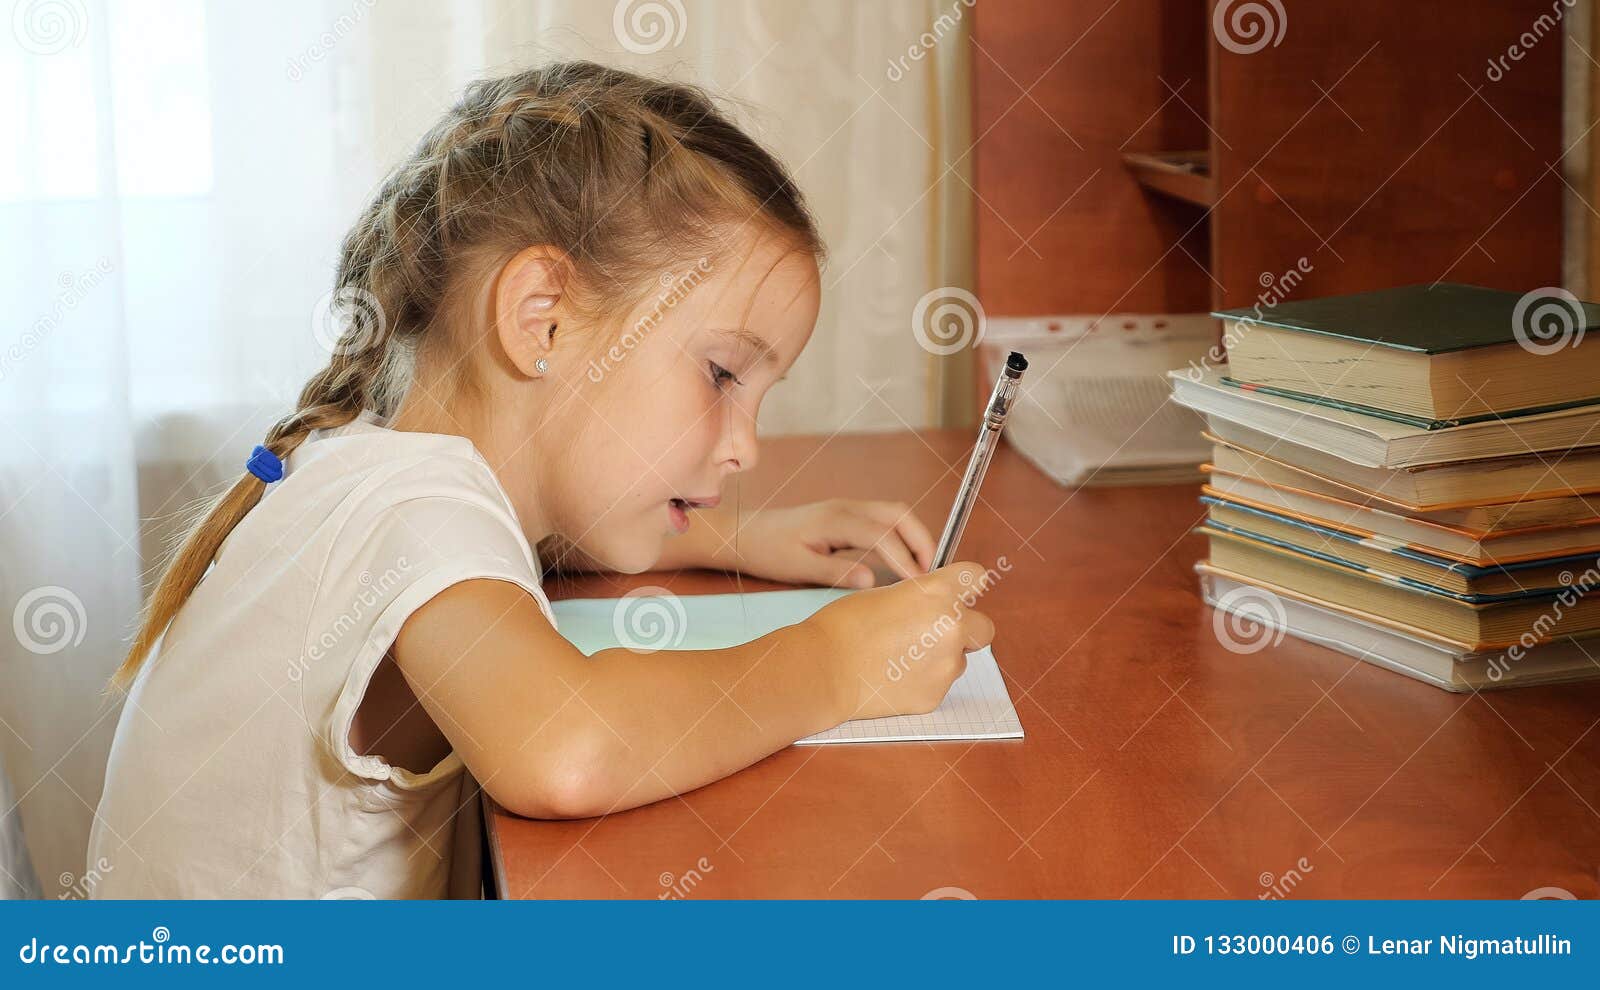 Маленькая девочка делает уроки. Девушка делает домашнее задание. Девочка делает домашнюю работу. Домашнее задание девочка. Девочка делает домашнее задание.